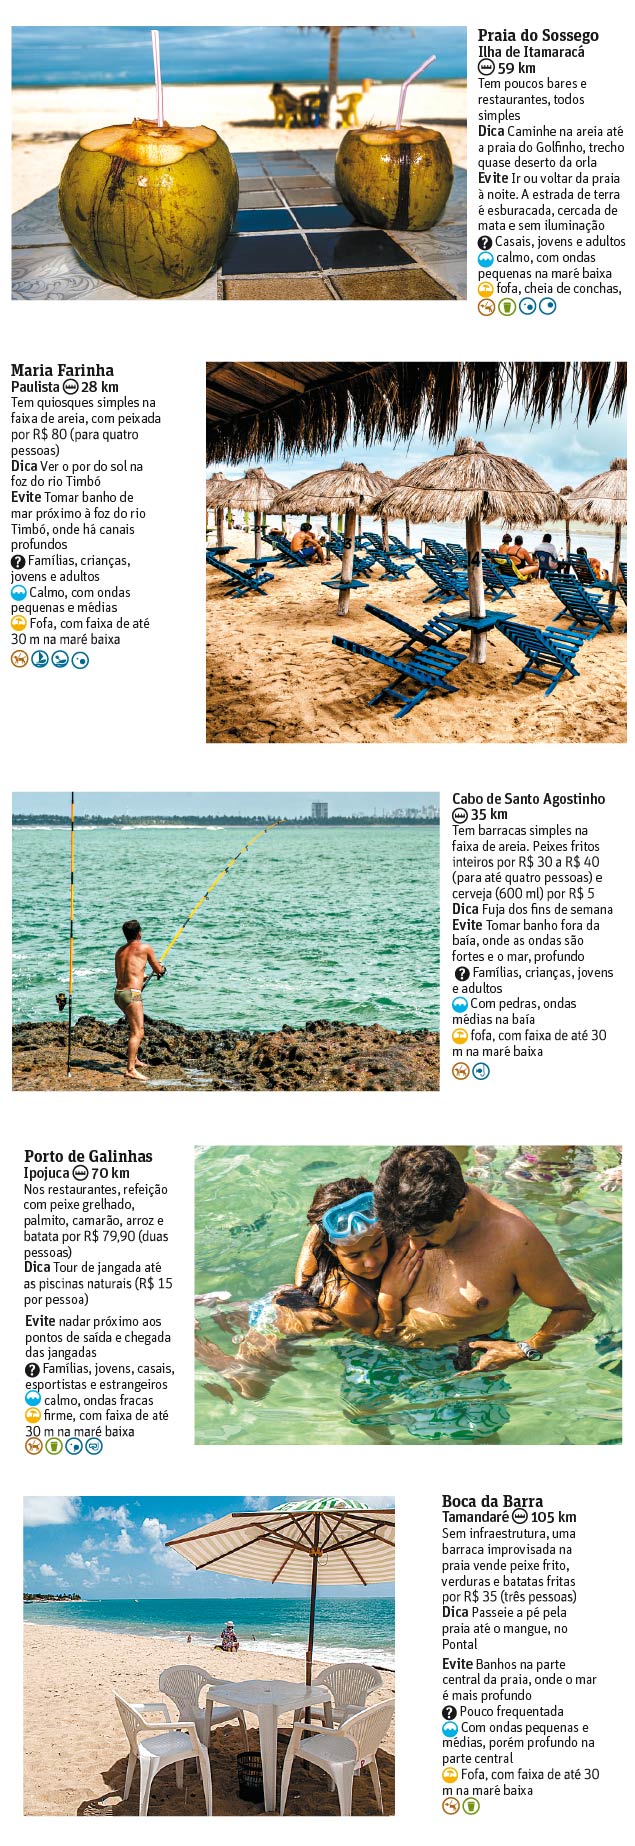 Conhea 11 praias de Pernambuco - Saiba como  o mar, o tipo de areia, o que comer e at o que evitar